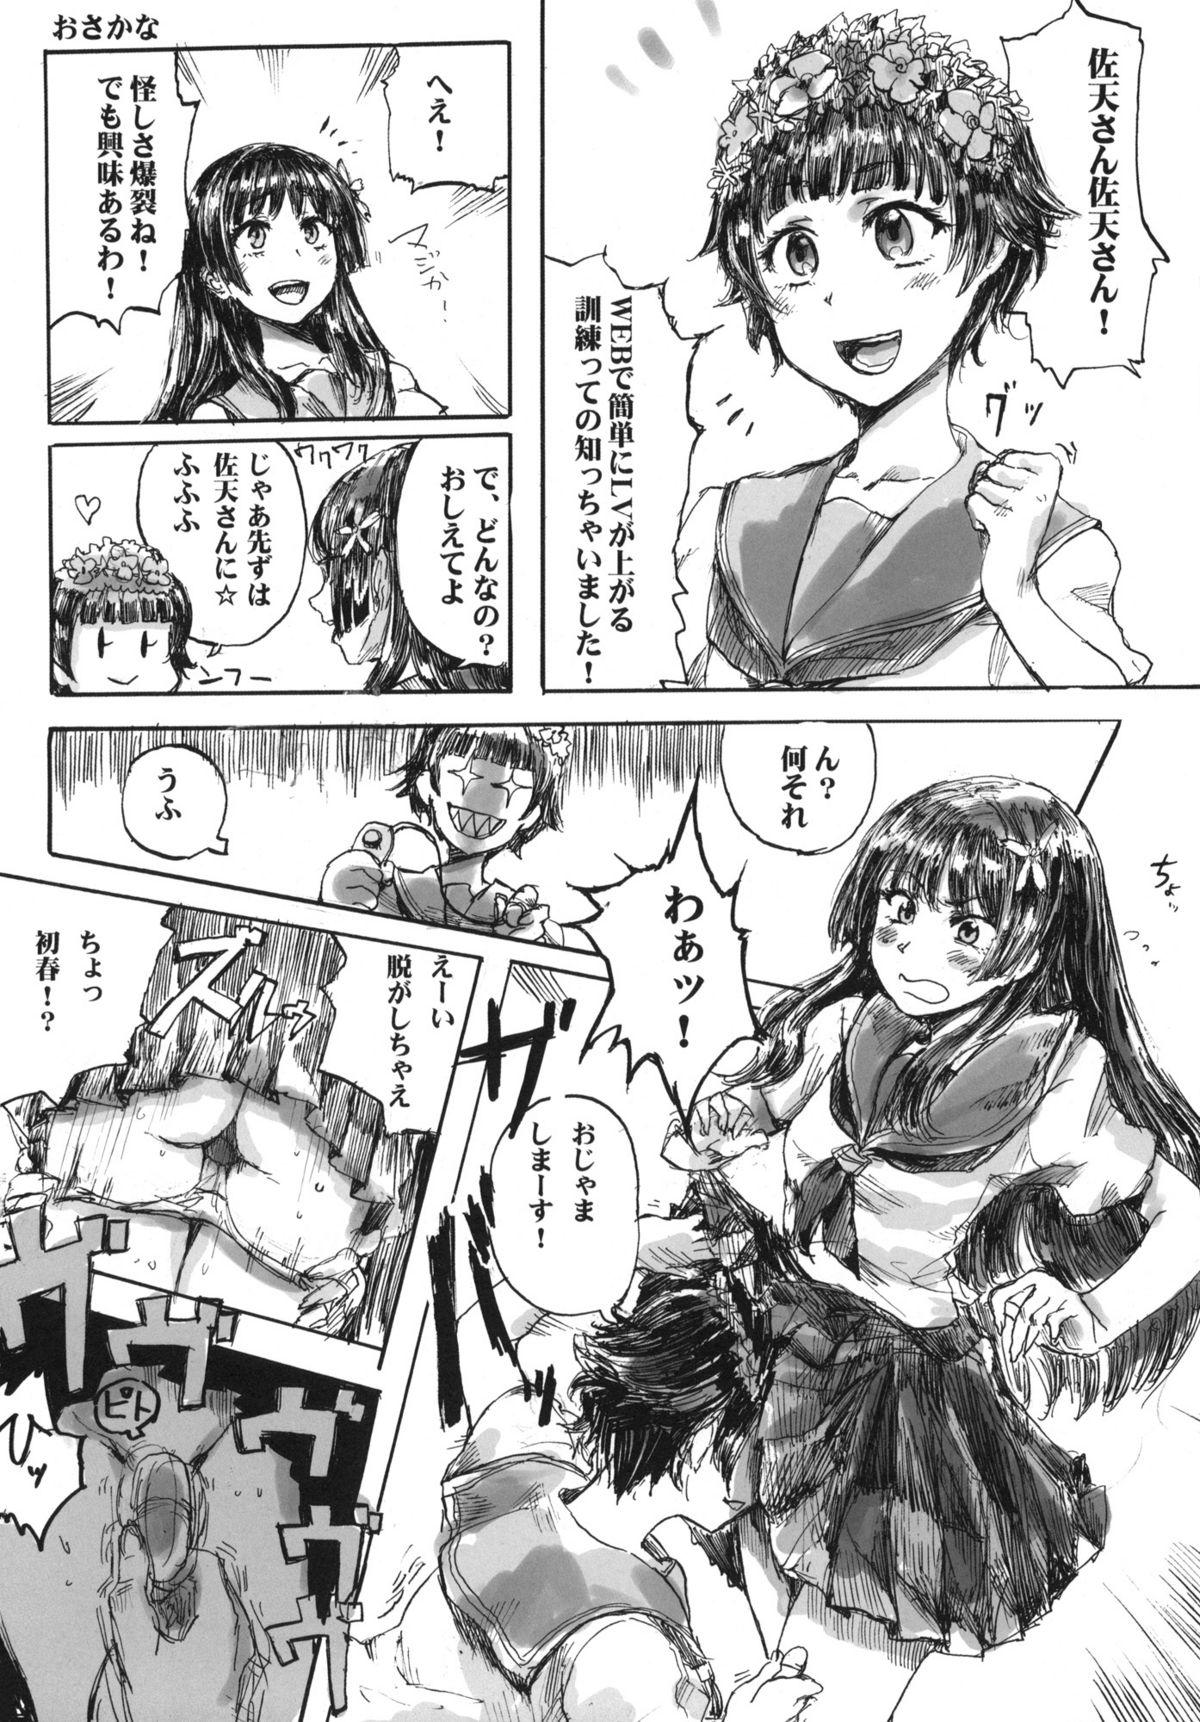 Porra i.Saten - Toaru kagaku no railgun Nasty - Page 23